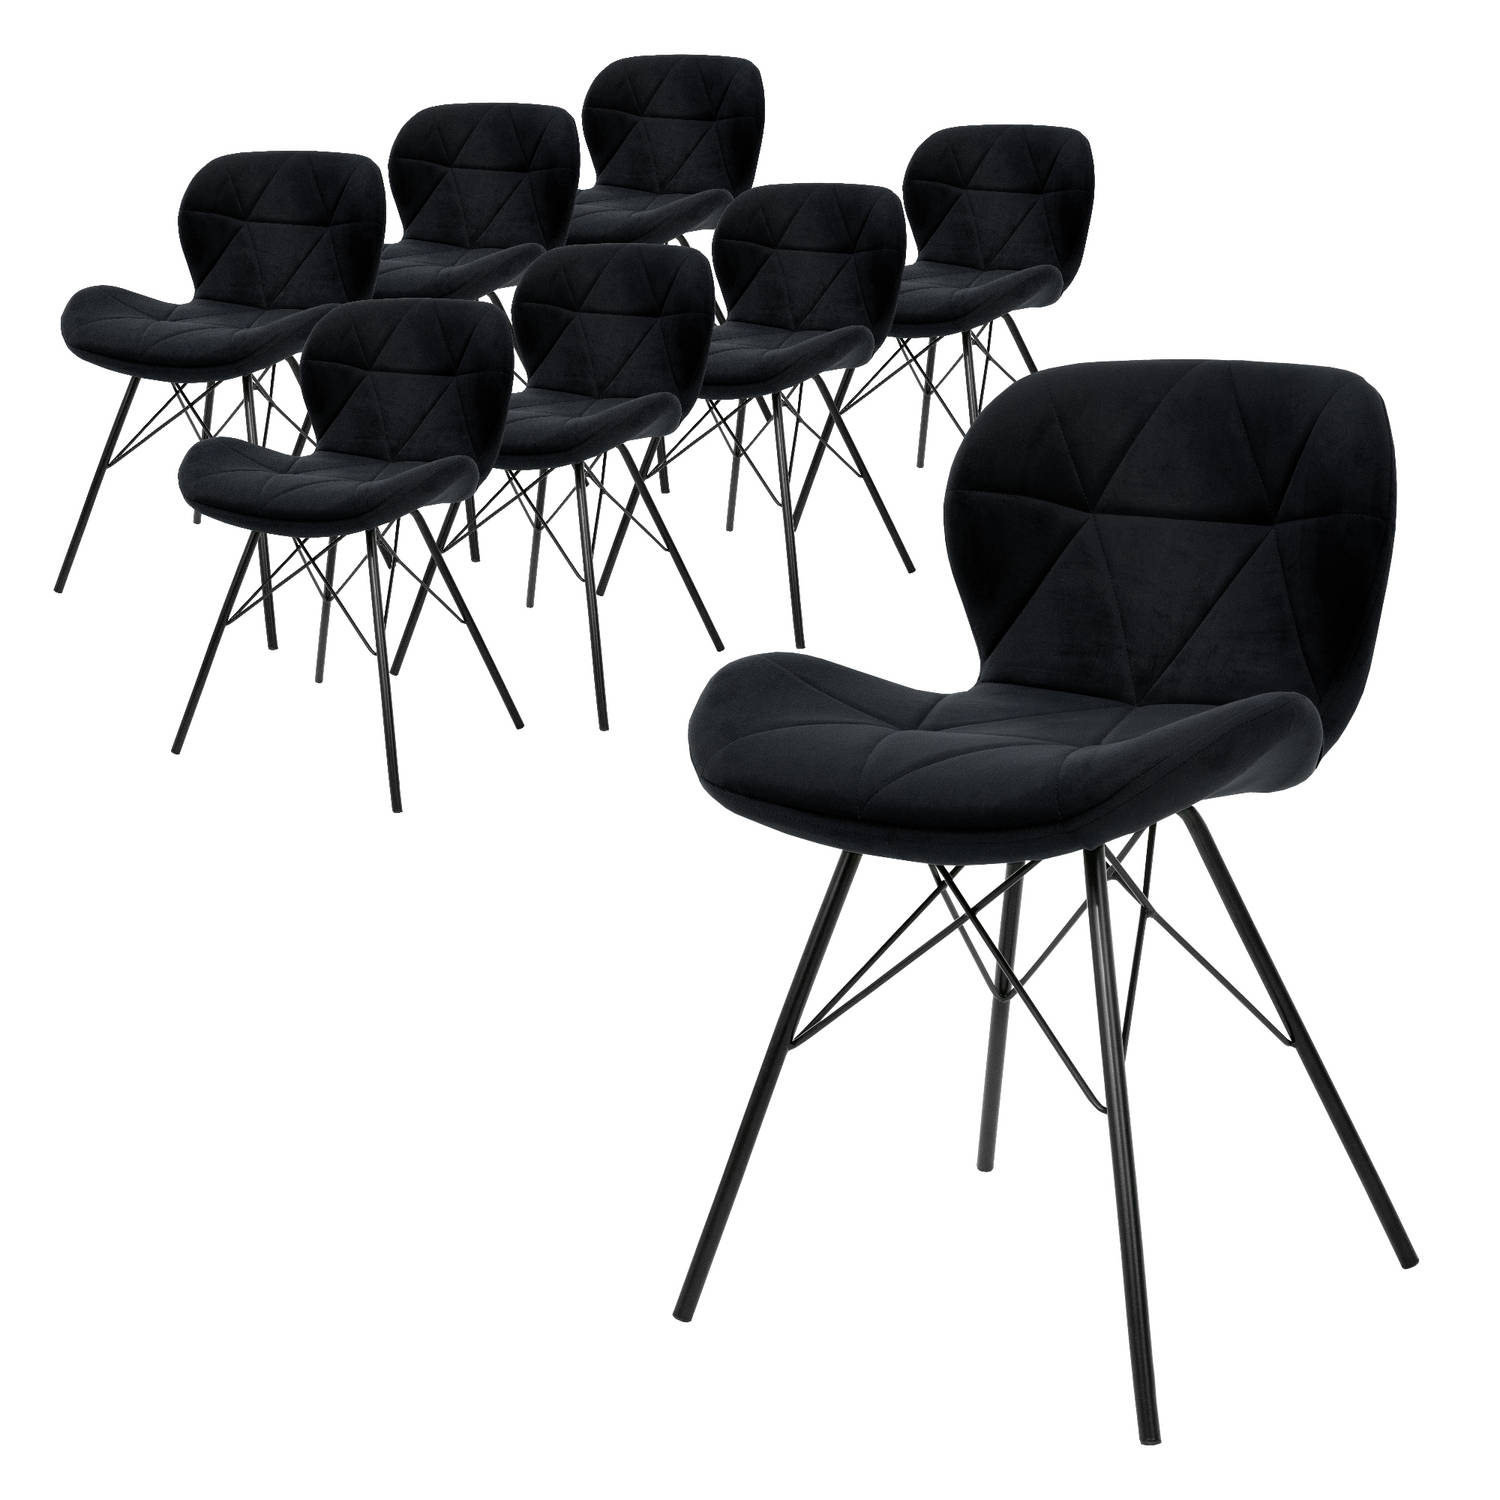 ML-Design Set van 8 eetkamerstoelen met rugleuning, zwart, keukenstoel met fluwelen bekleding, gestoffeerde stoel met metalen poten, ergonomische stoel voor eettafel, woonkamerstoe